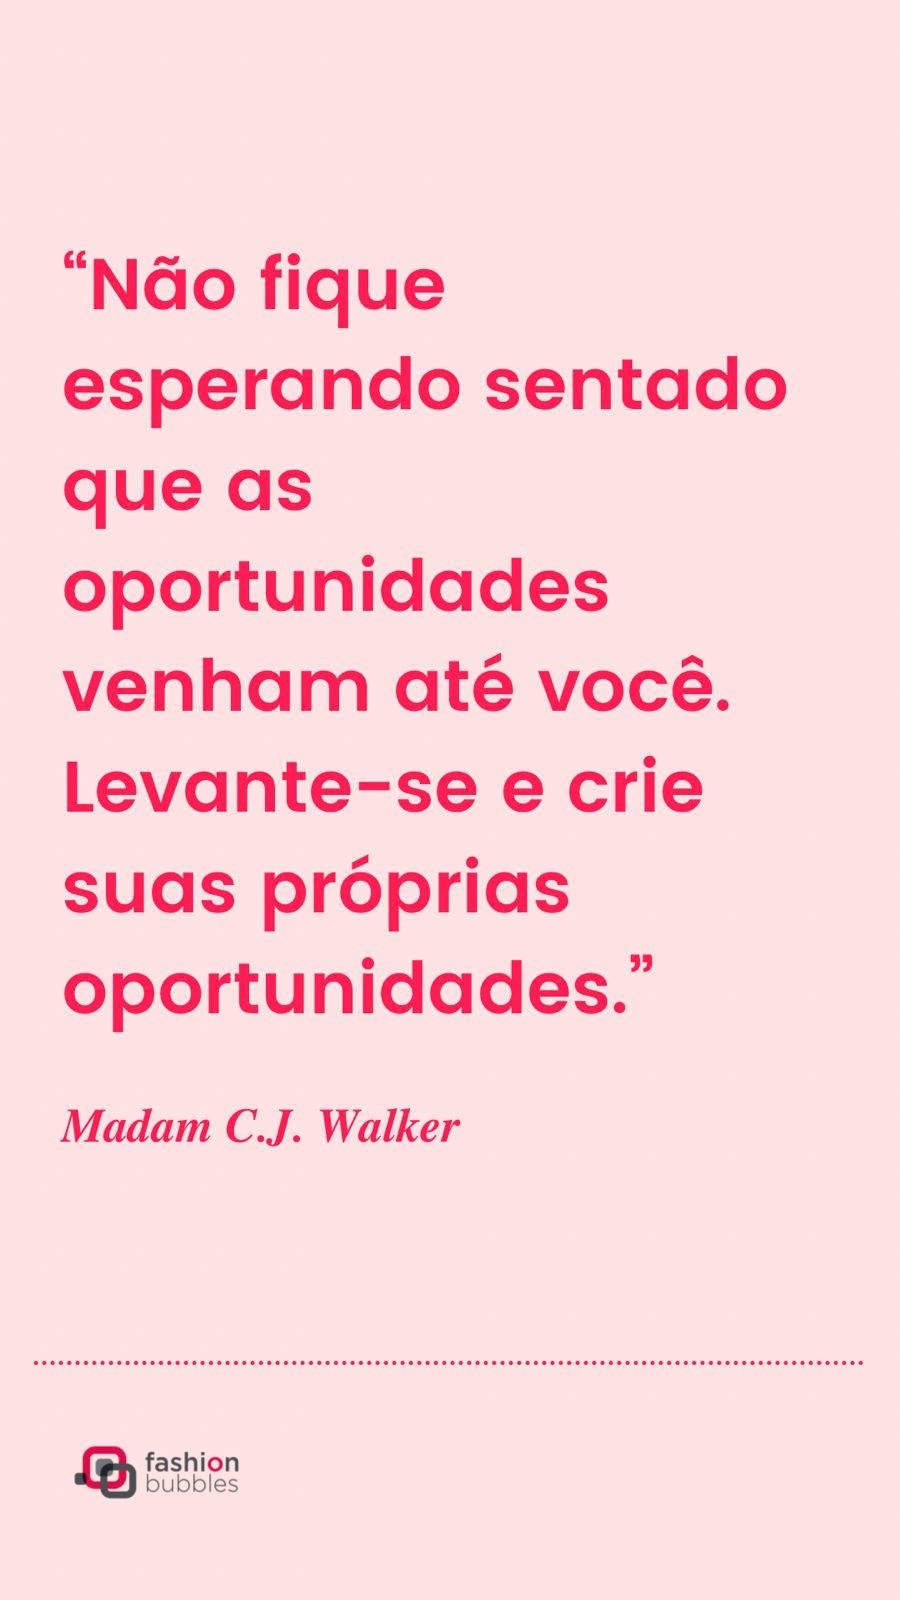 Mensagem de empreendedorismo feminino: “Não fique esperando sentado que as oportunidades venham até você. Levante-se e crie suas próprias oportunidades.” Madam C.J. Walker